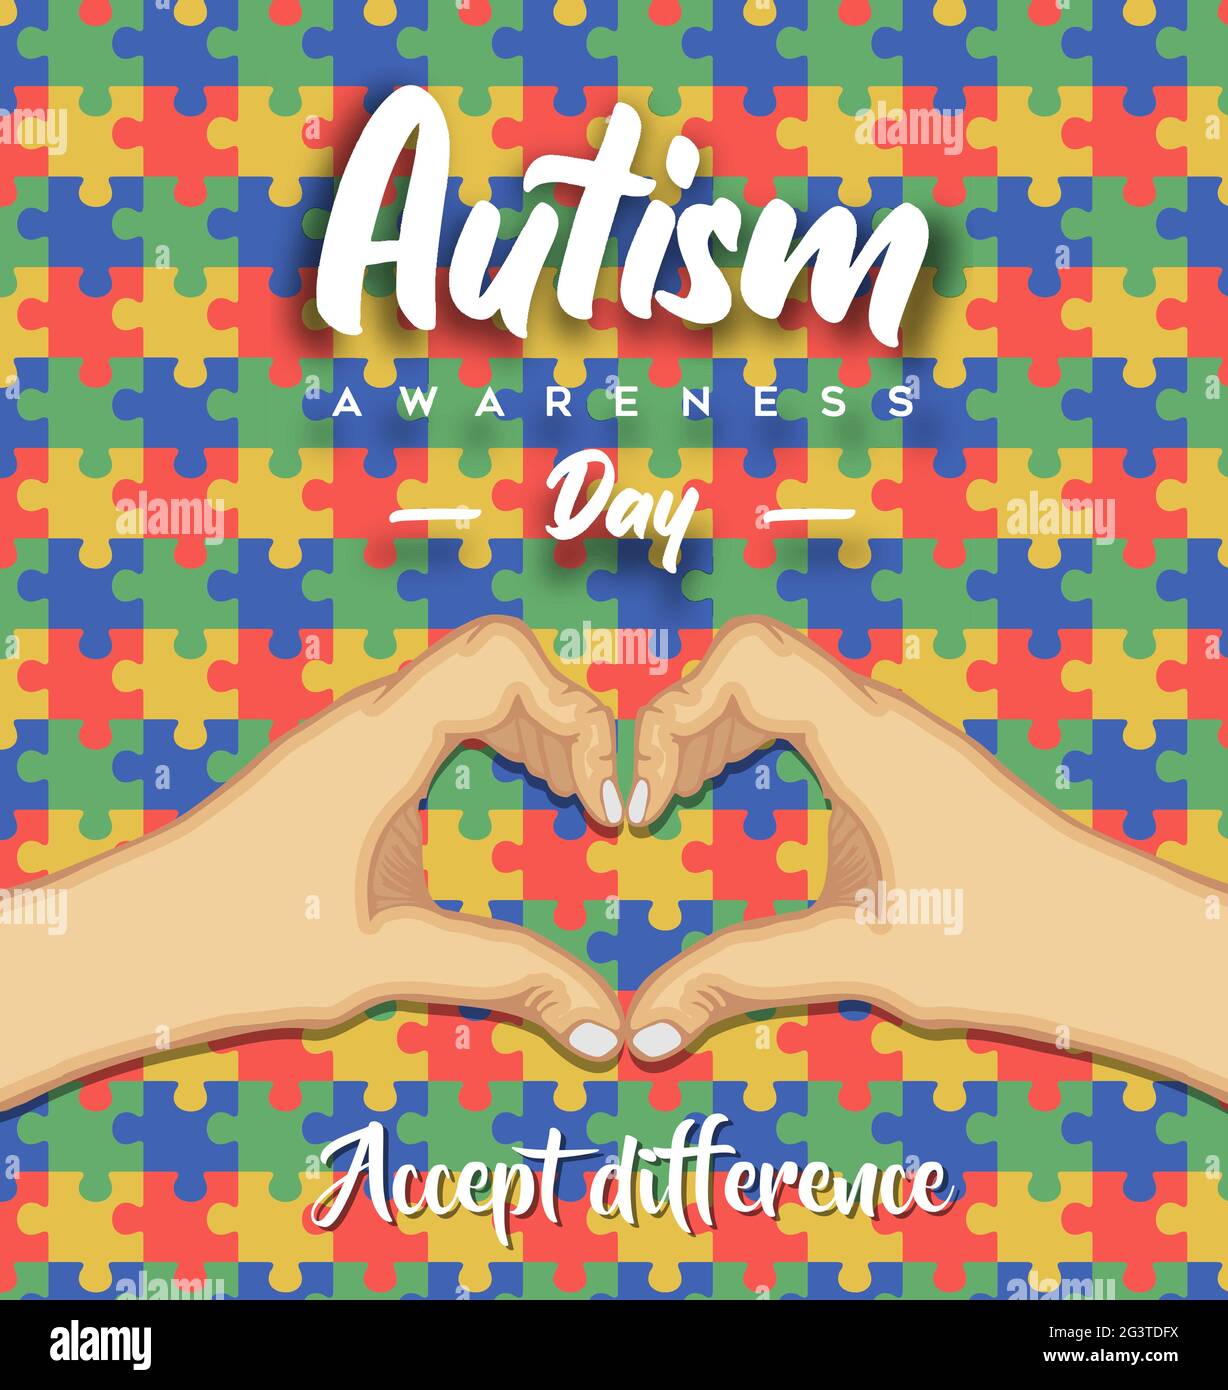 Autismus-Bewusstsein Tag Grußkarte Illustration der Hände zusammen machen Herzform mit bunten Puzzle-Spiel Hintergrund. Autistische Kinder lernen abili Stock Vektor